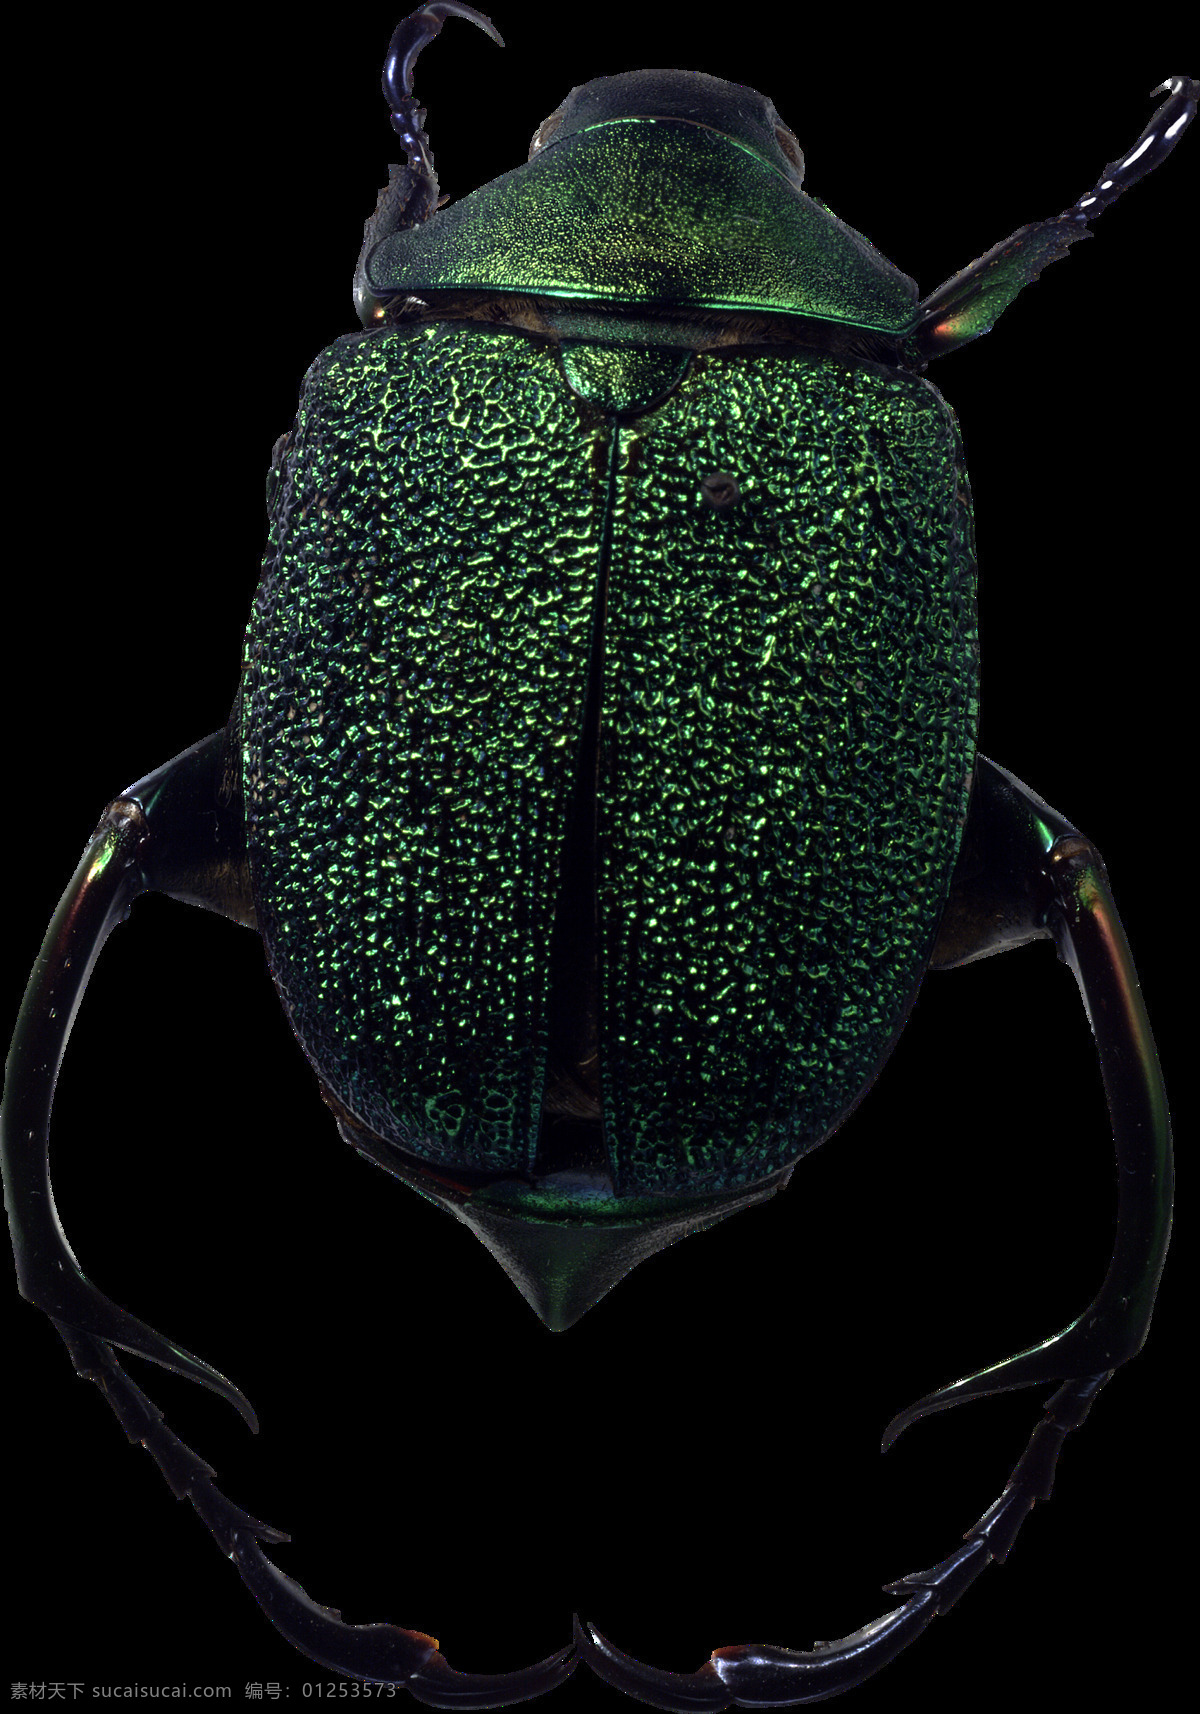 世界 上 最 可怕 虫子 免 抠 透明 图 层 昆虫图片 死虫子图片 大虫子 甲壳虫 大全 甲虫图片 各种甲虫 各种昆虫 昆虫图片大全